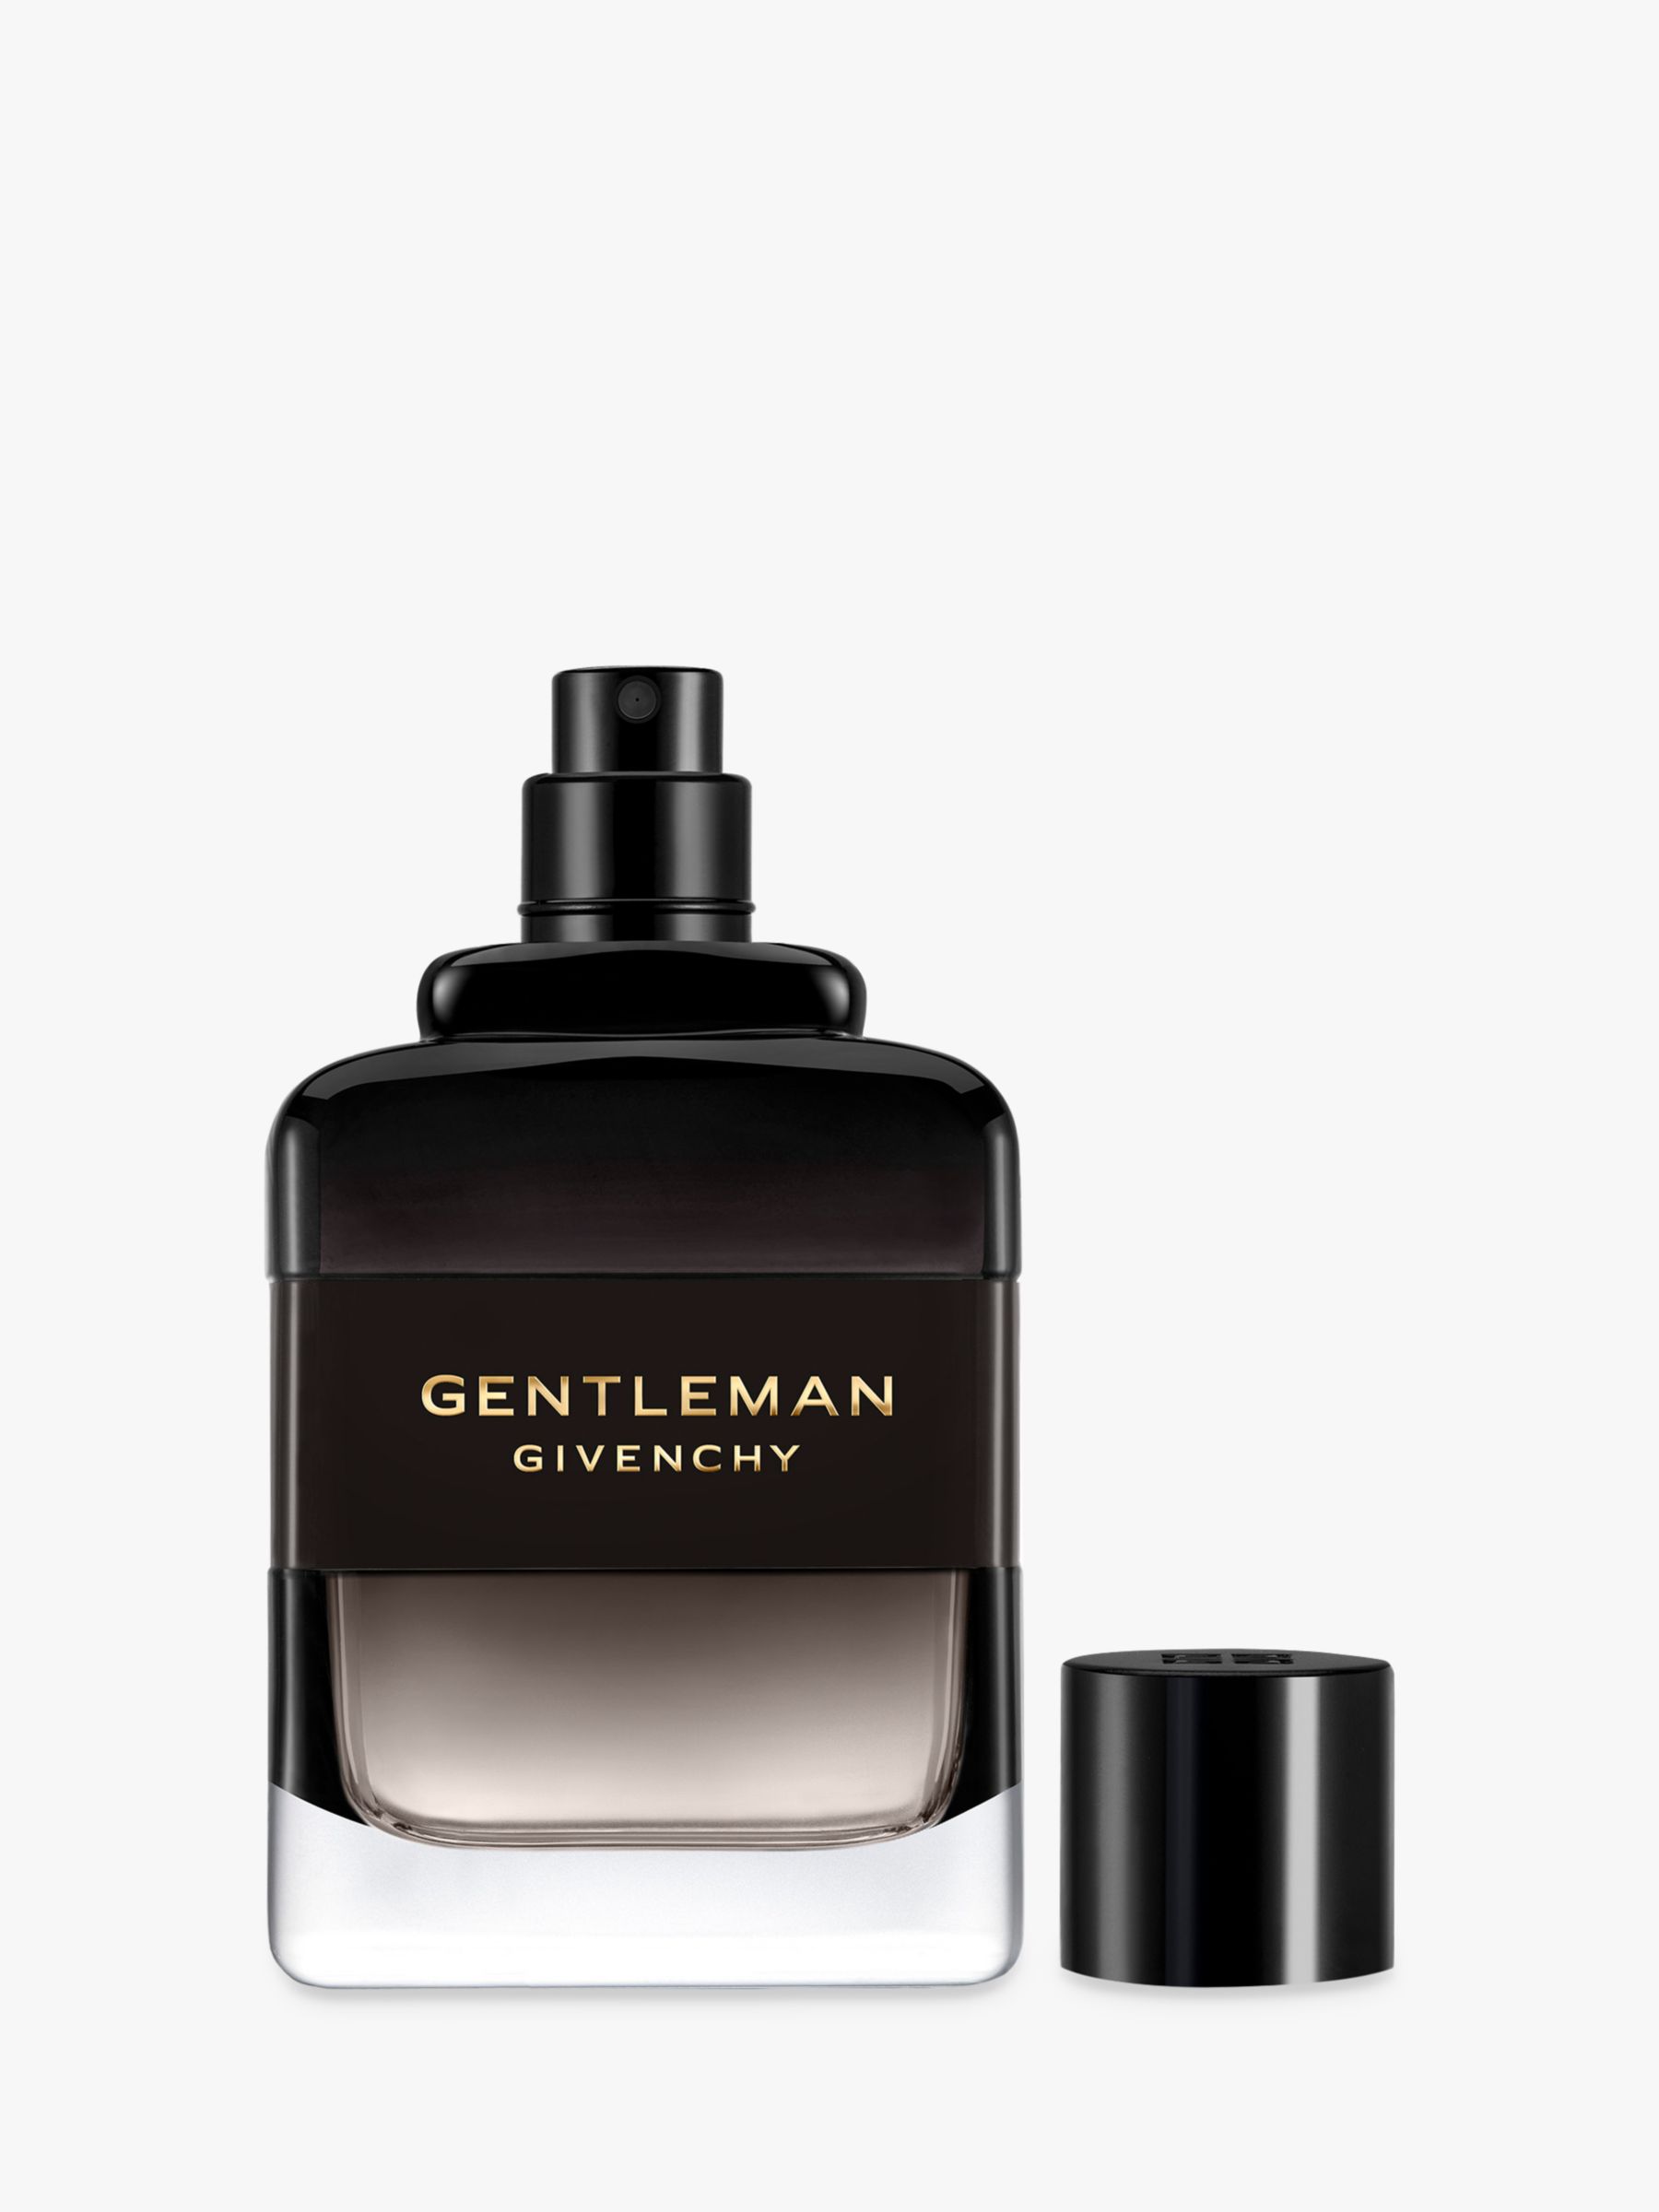 Givenchy Gentleman Eau de Parfum Boisée, 60ml at John Lewis & Partners